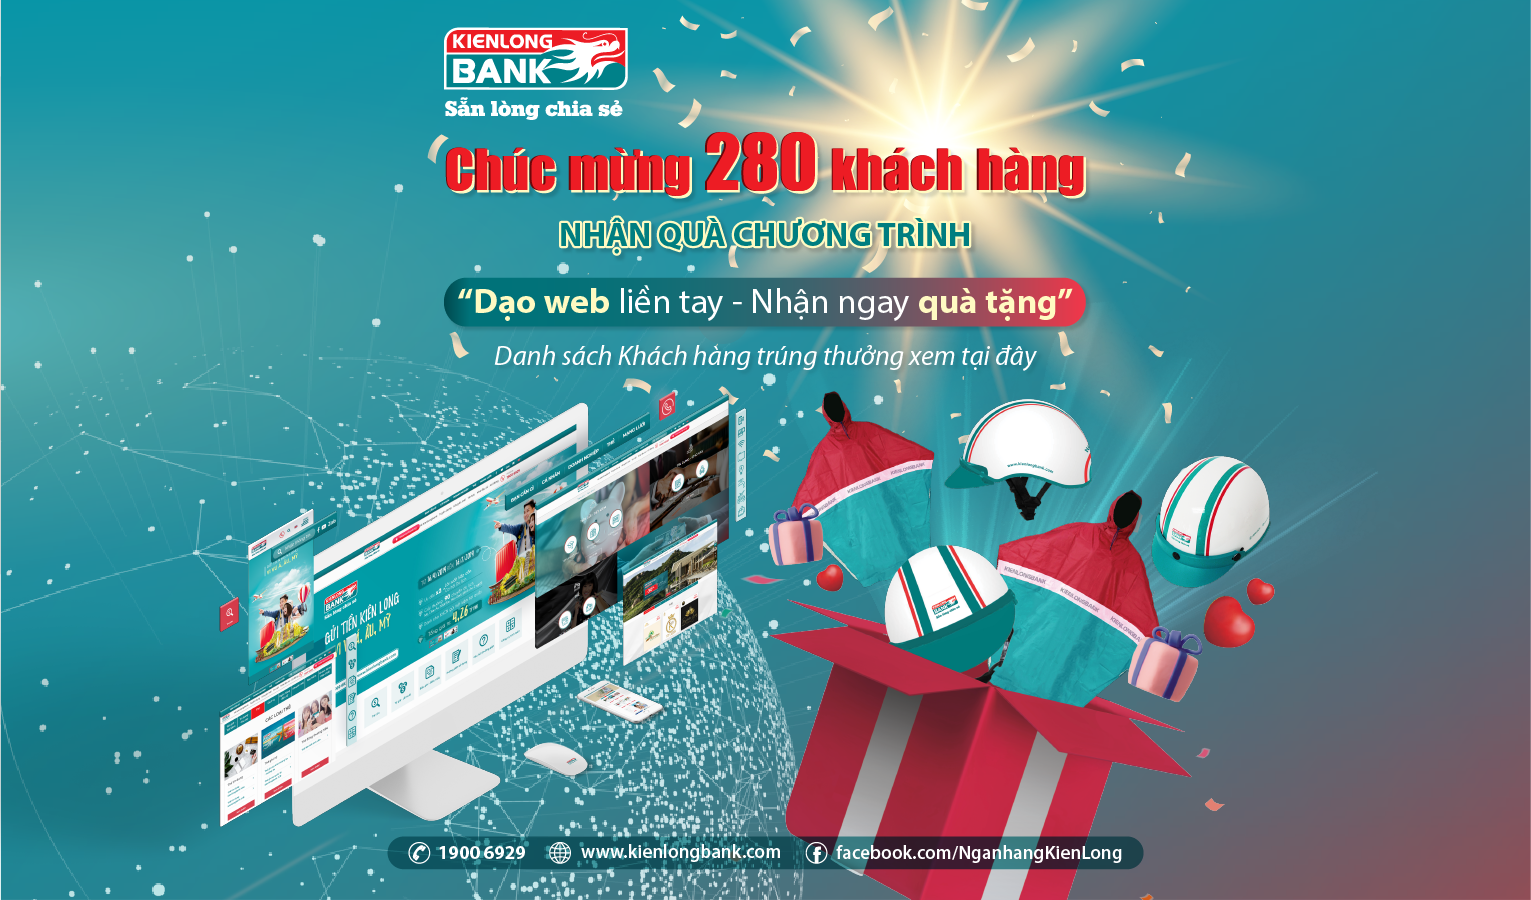 Chúc mừng 280 khách hàng nhận quà chương trình “Dạo web liền tay - Nhận ngay quà tặng” của Kienlongbank